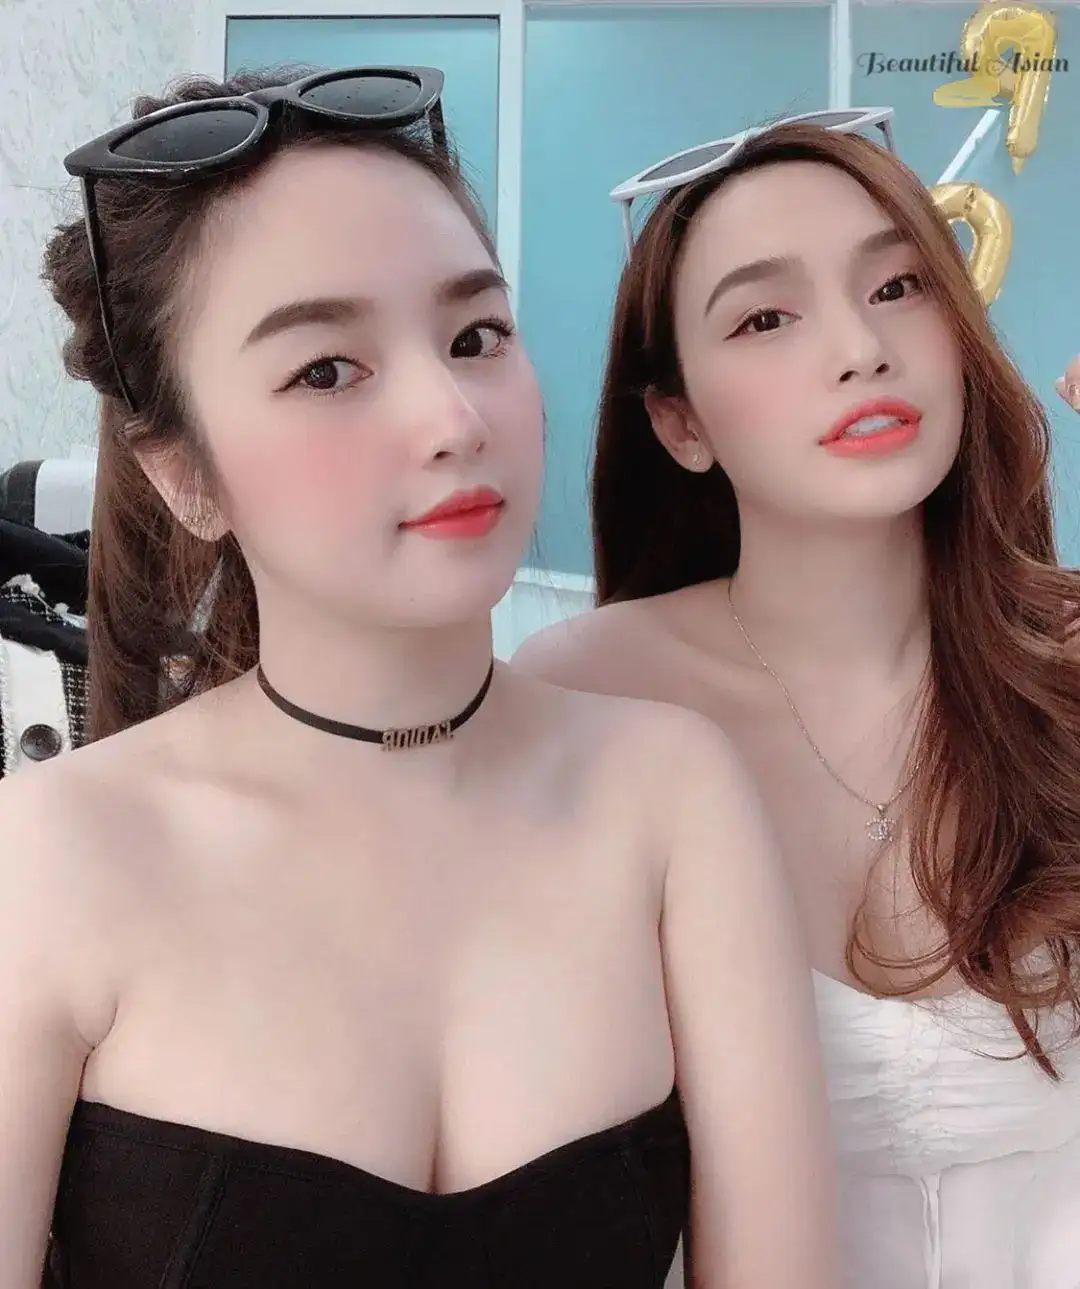 lovely Vietnamese females image